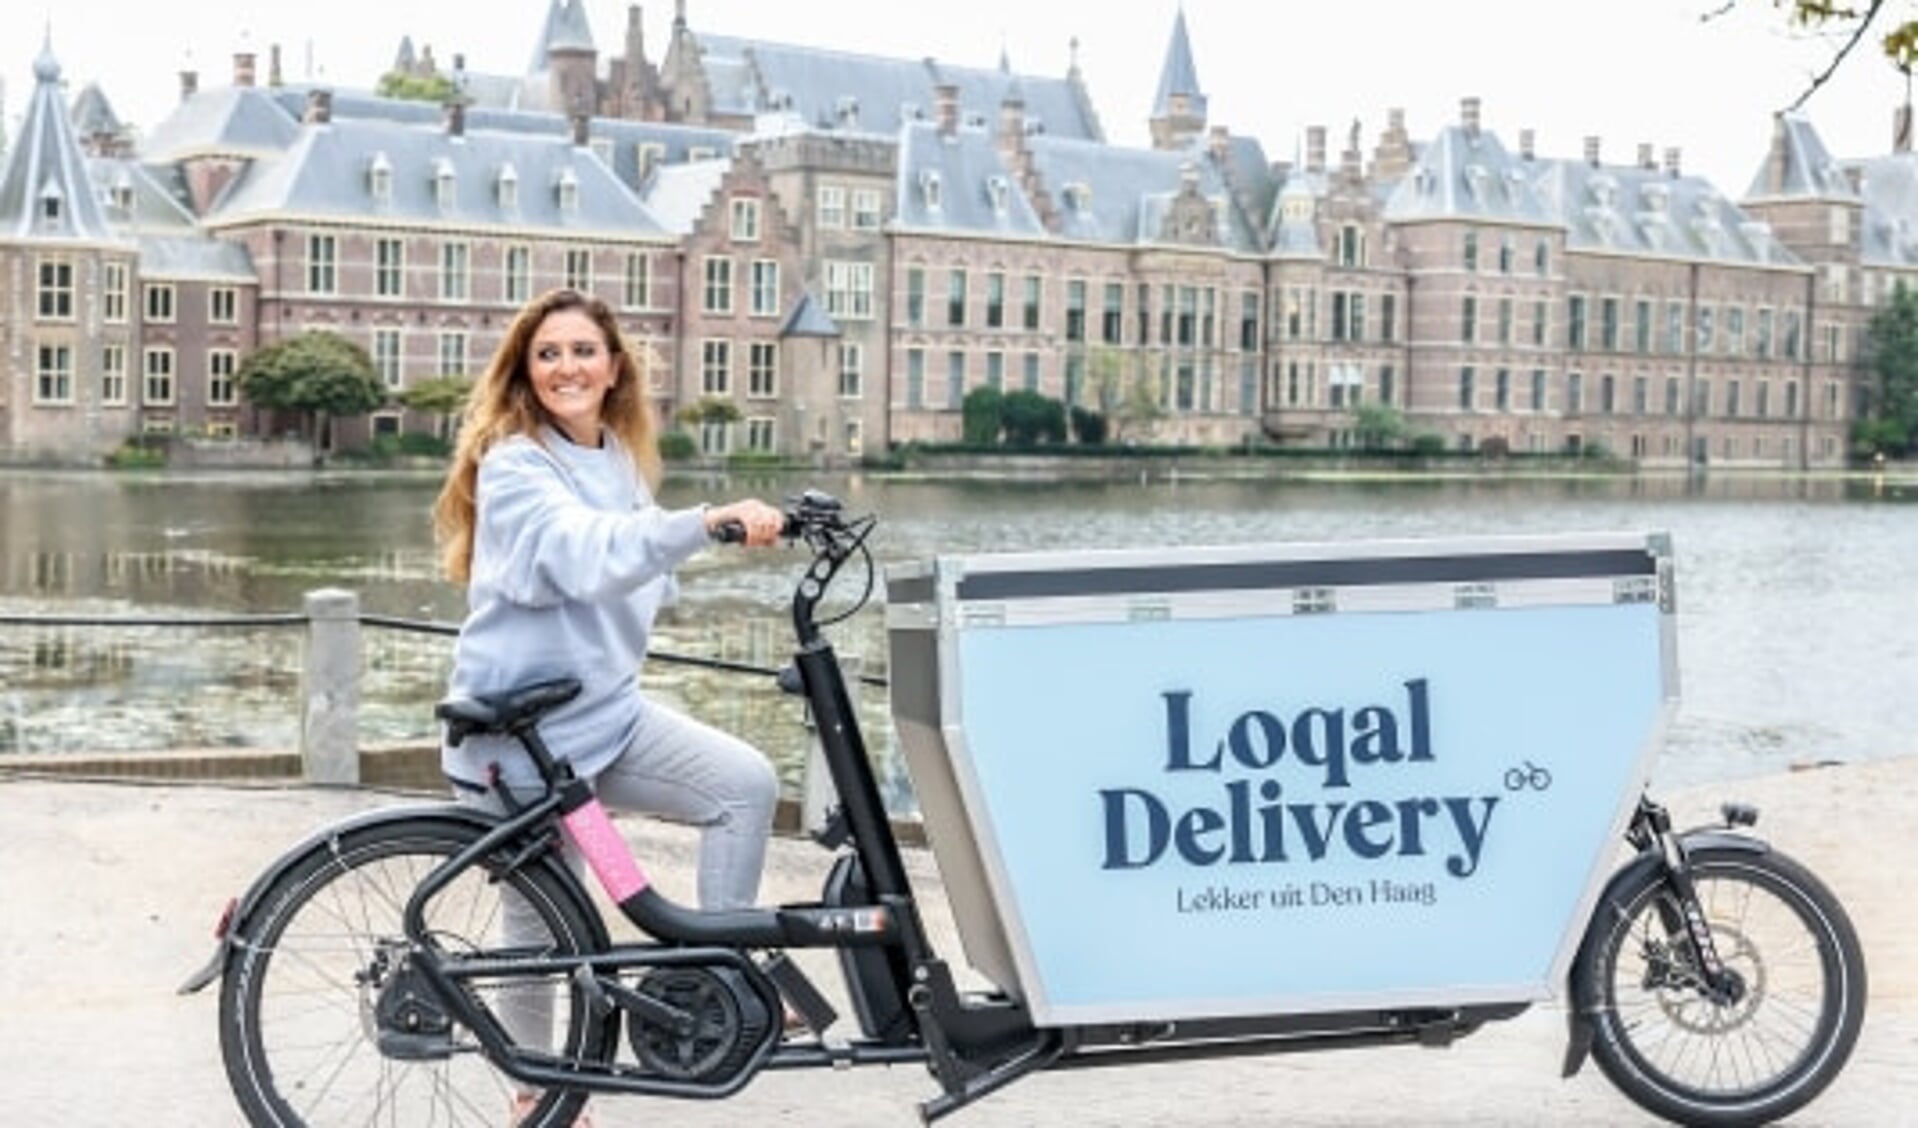 17 Haagse speciaalzaken gebundeld bij nieuwe bezorgservice Loqal Delivery 